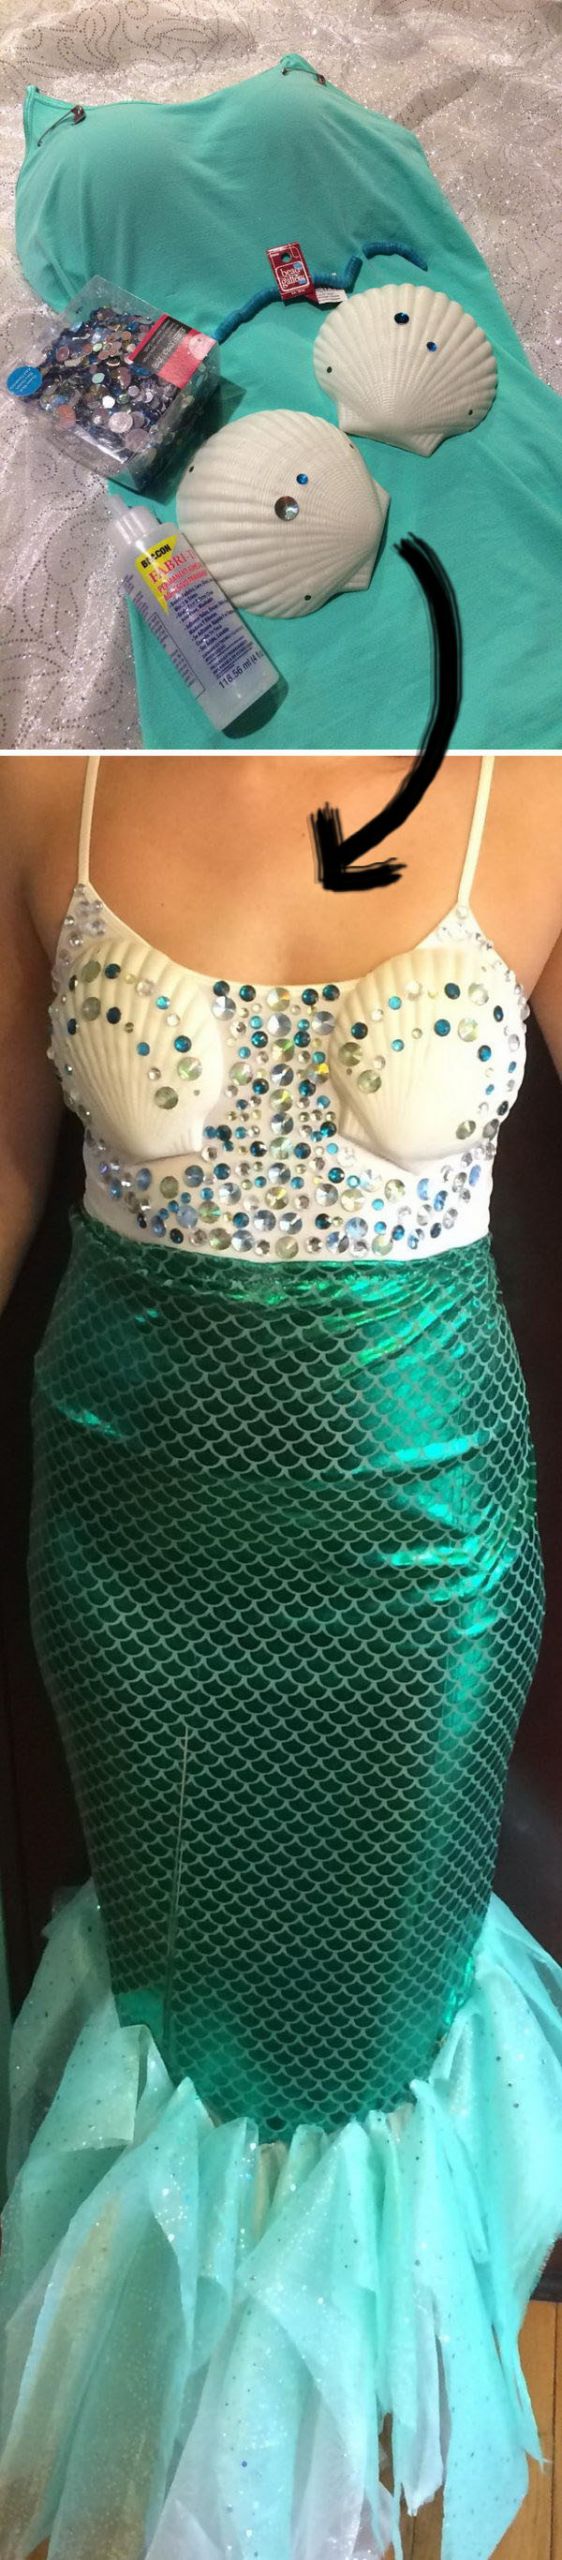 Mermaid Costume DIY
 25 Mermaid Costumes and DIY Ideas 2017